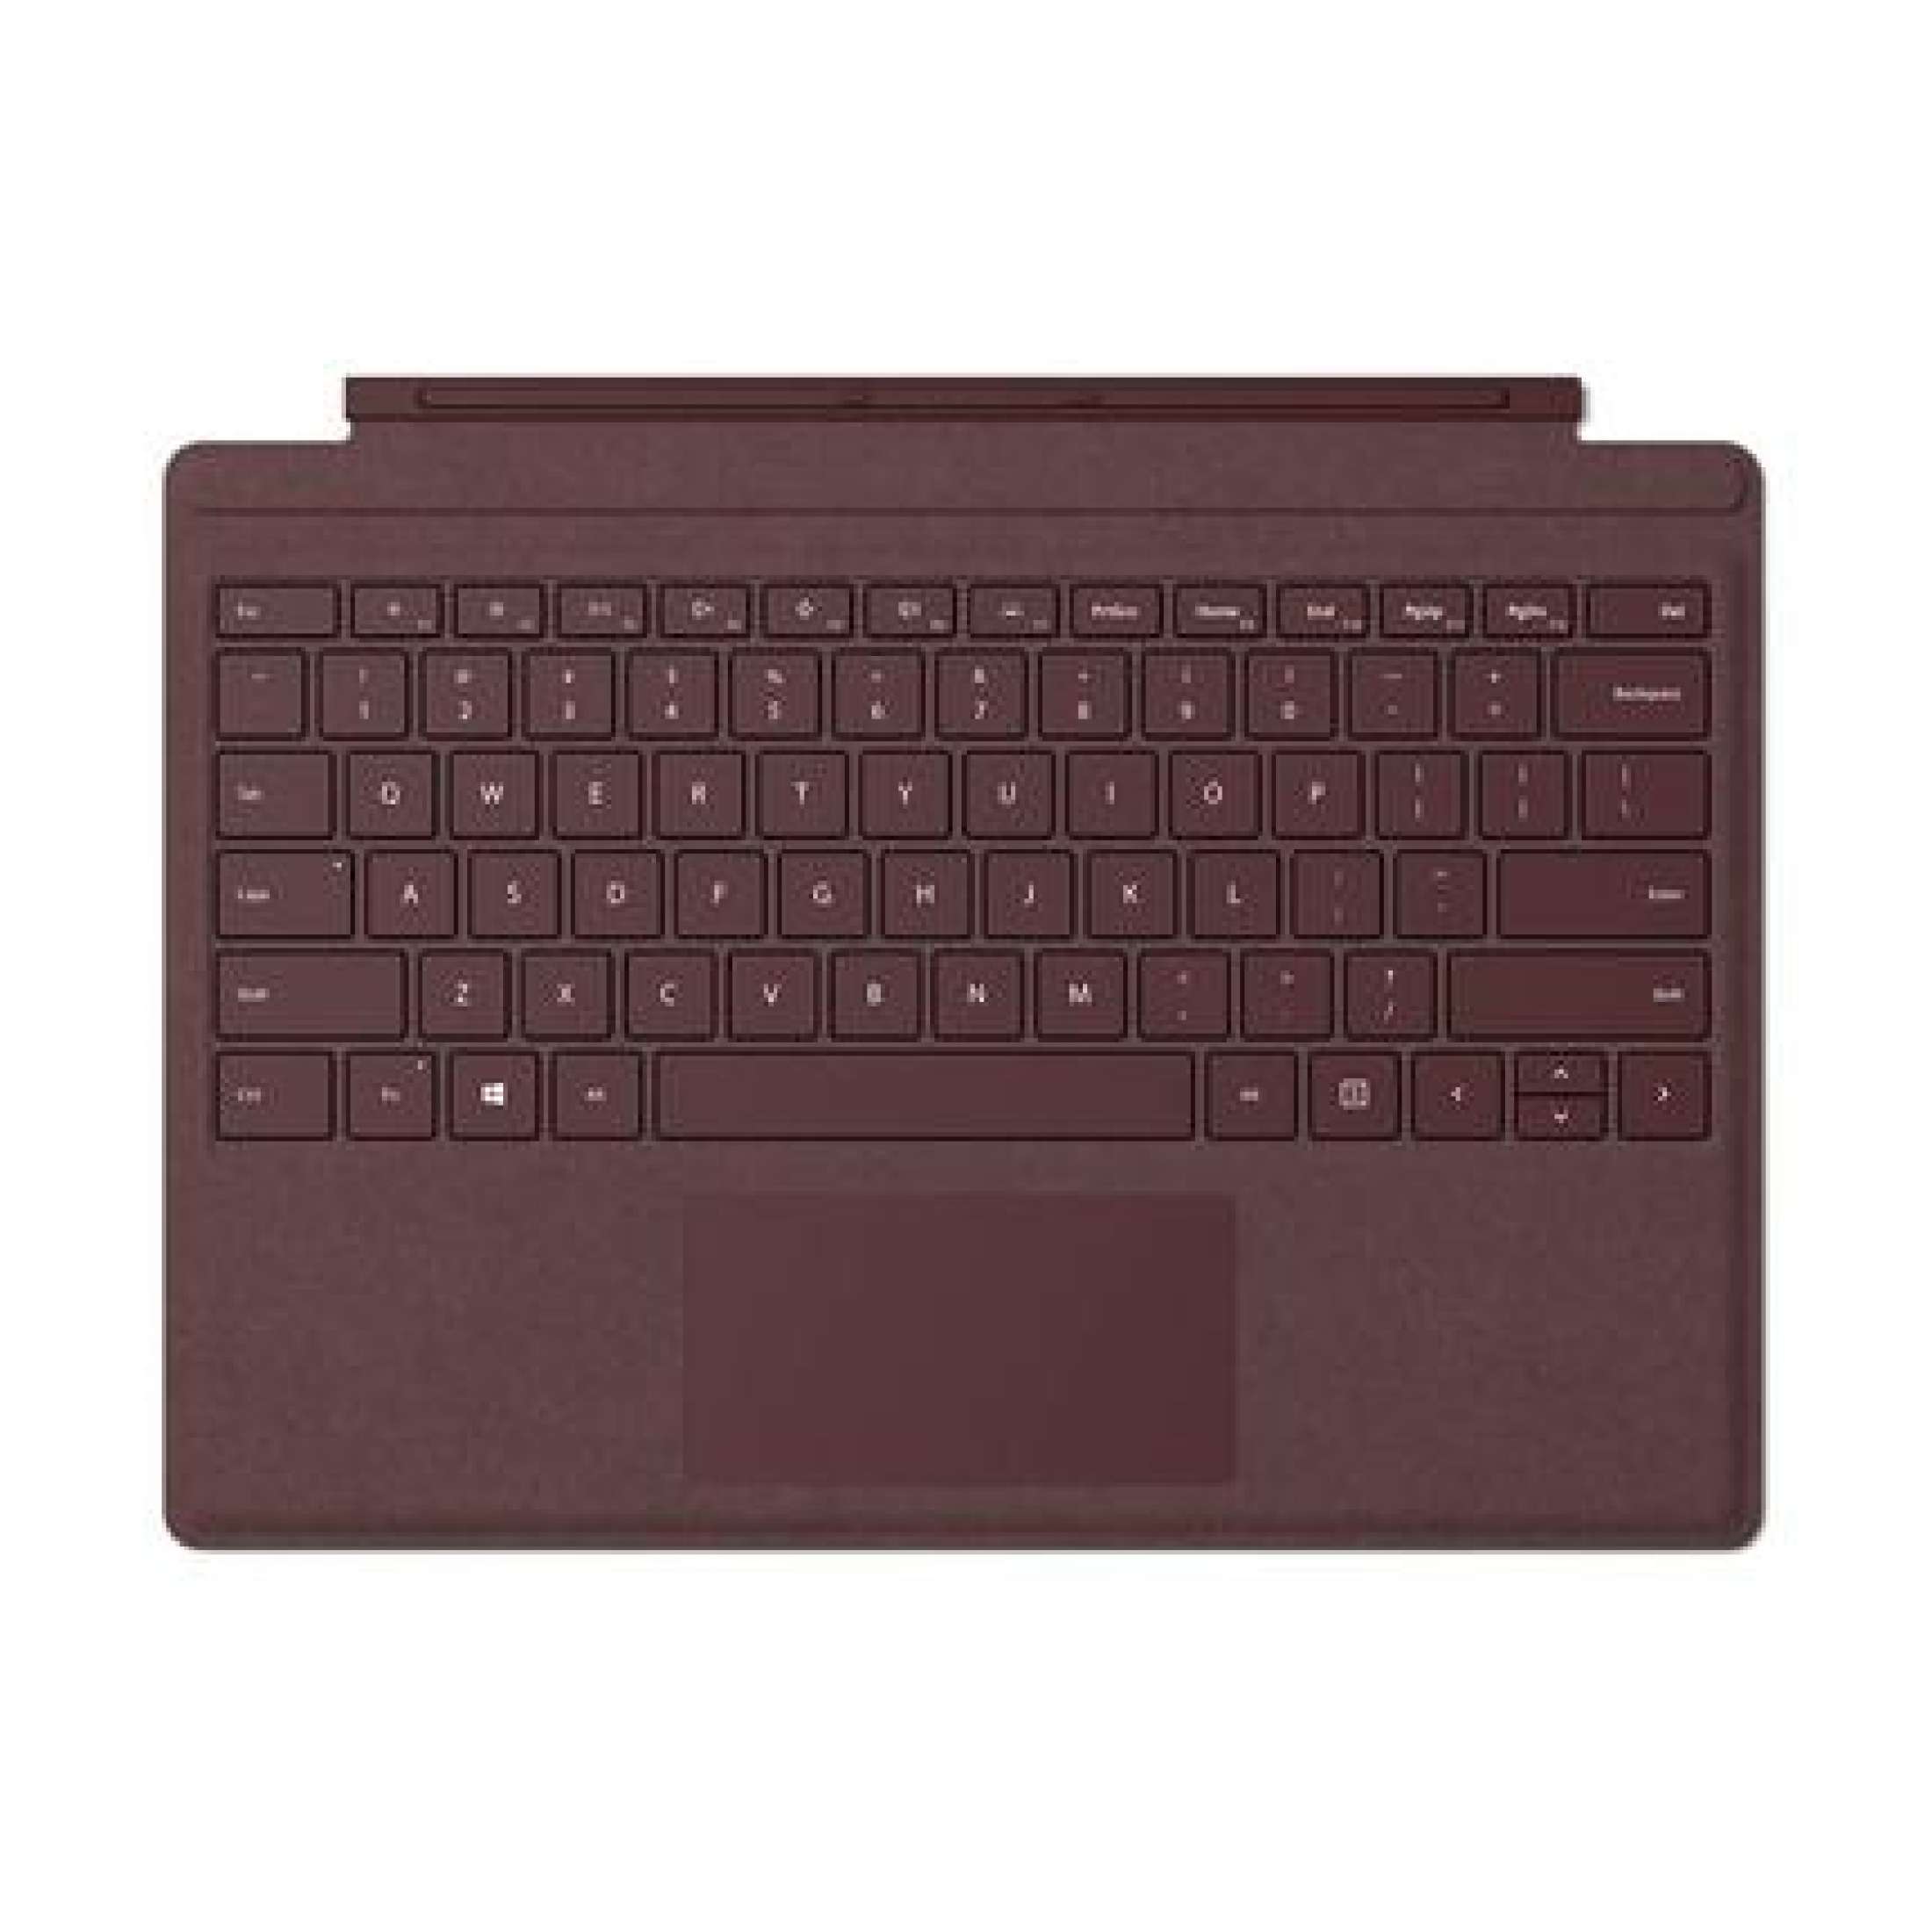 Bàn Phím Microsoft Type Cover Surface Pro sản xuất tại Mỹ gõ siêu êm nhẹ, gọn mỏng sang trọng, kiêm bao da bảo vệ, đủ màu fullbox (Bảo hành 6 tháng)